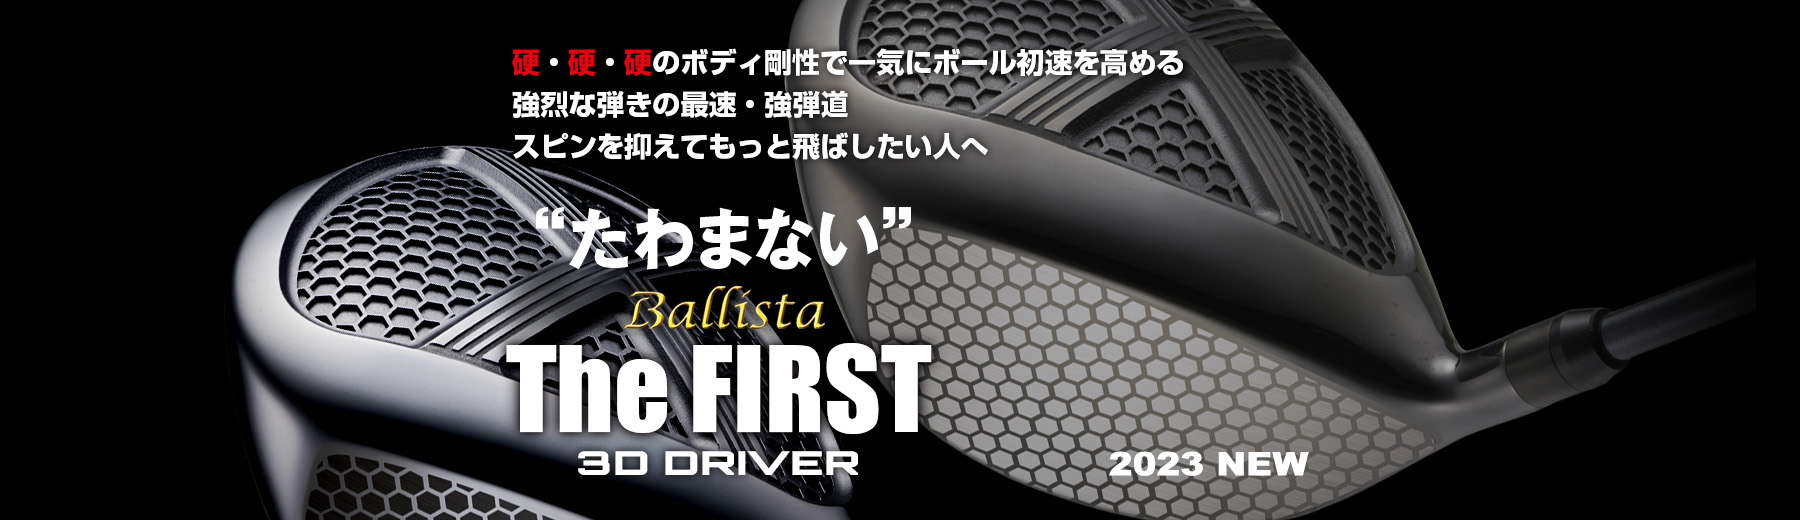 Ballista The FIRST 3D DRIVER